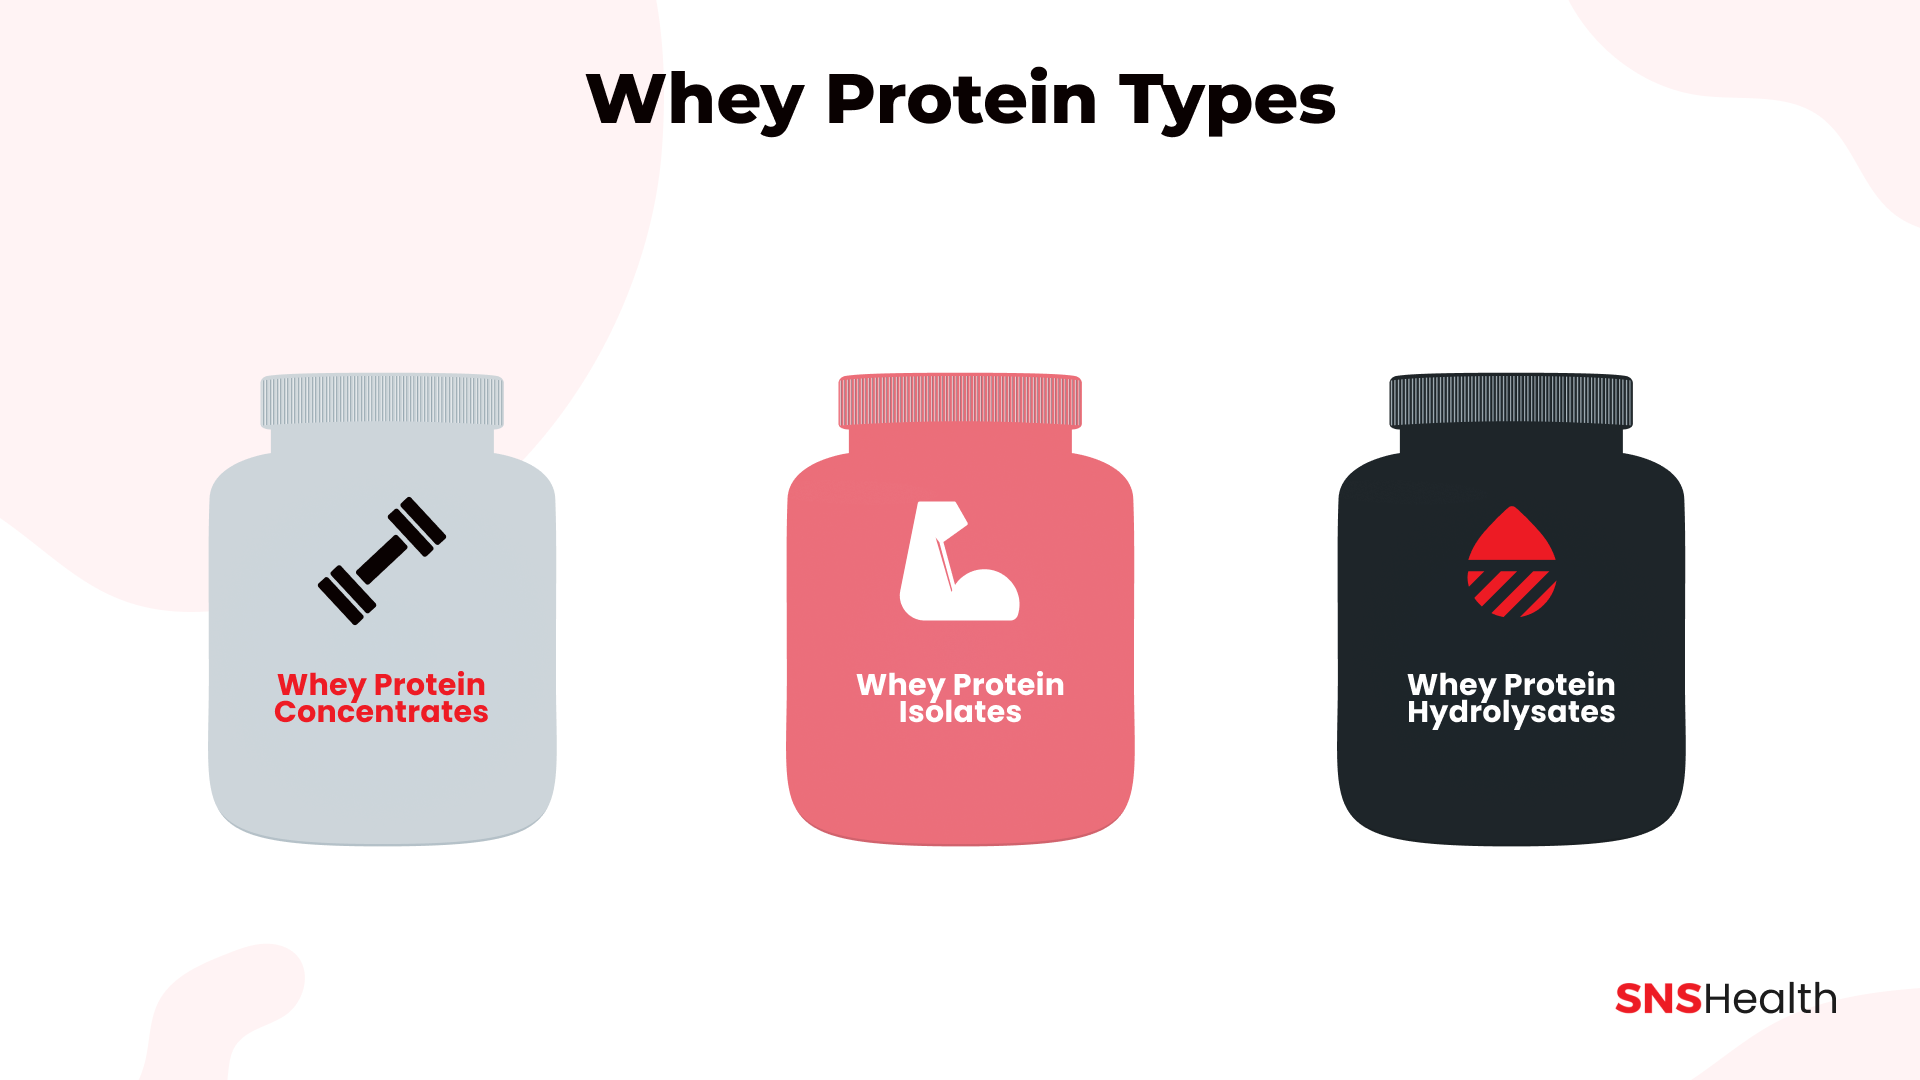 Whey protein types